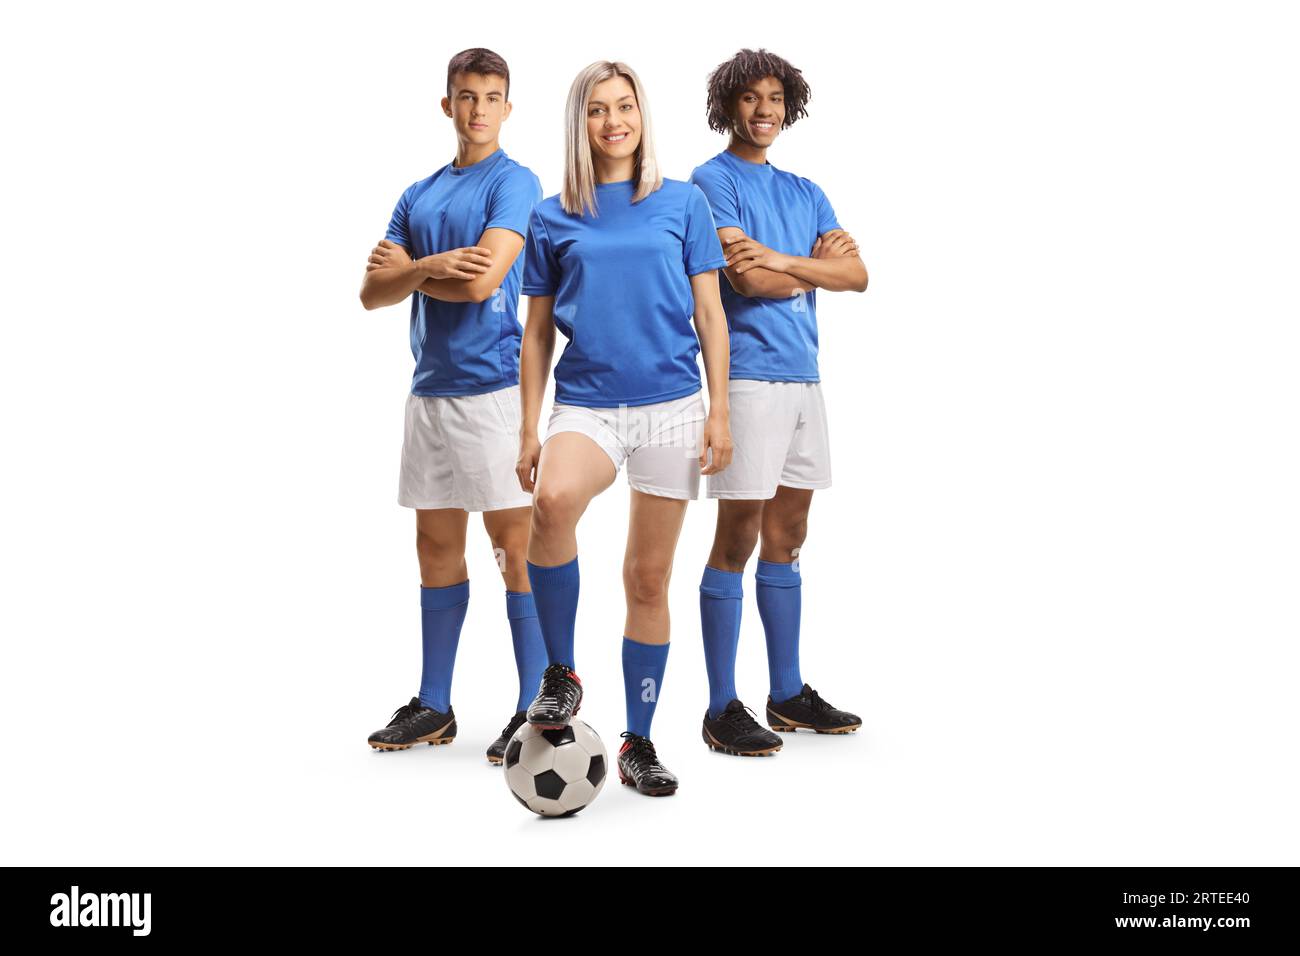 Joueurs de football masculin et féminin posant isolé sur fond blanc Banque D'Images